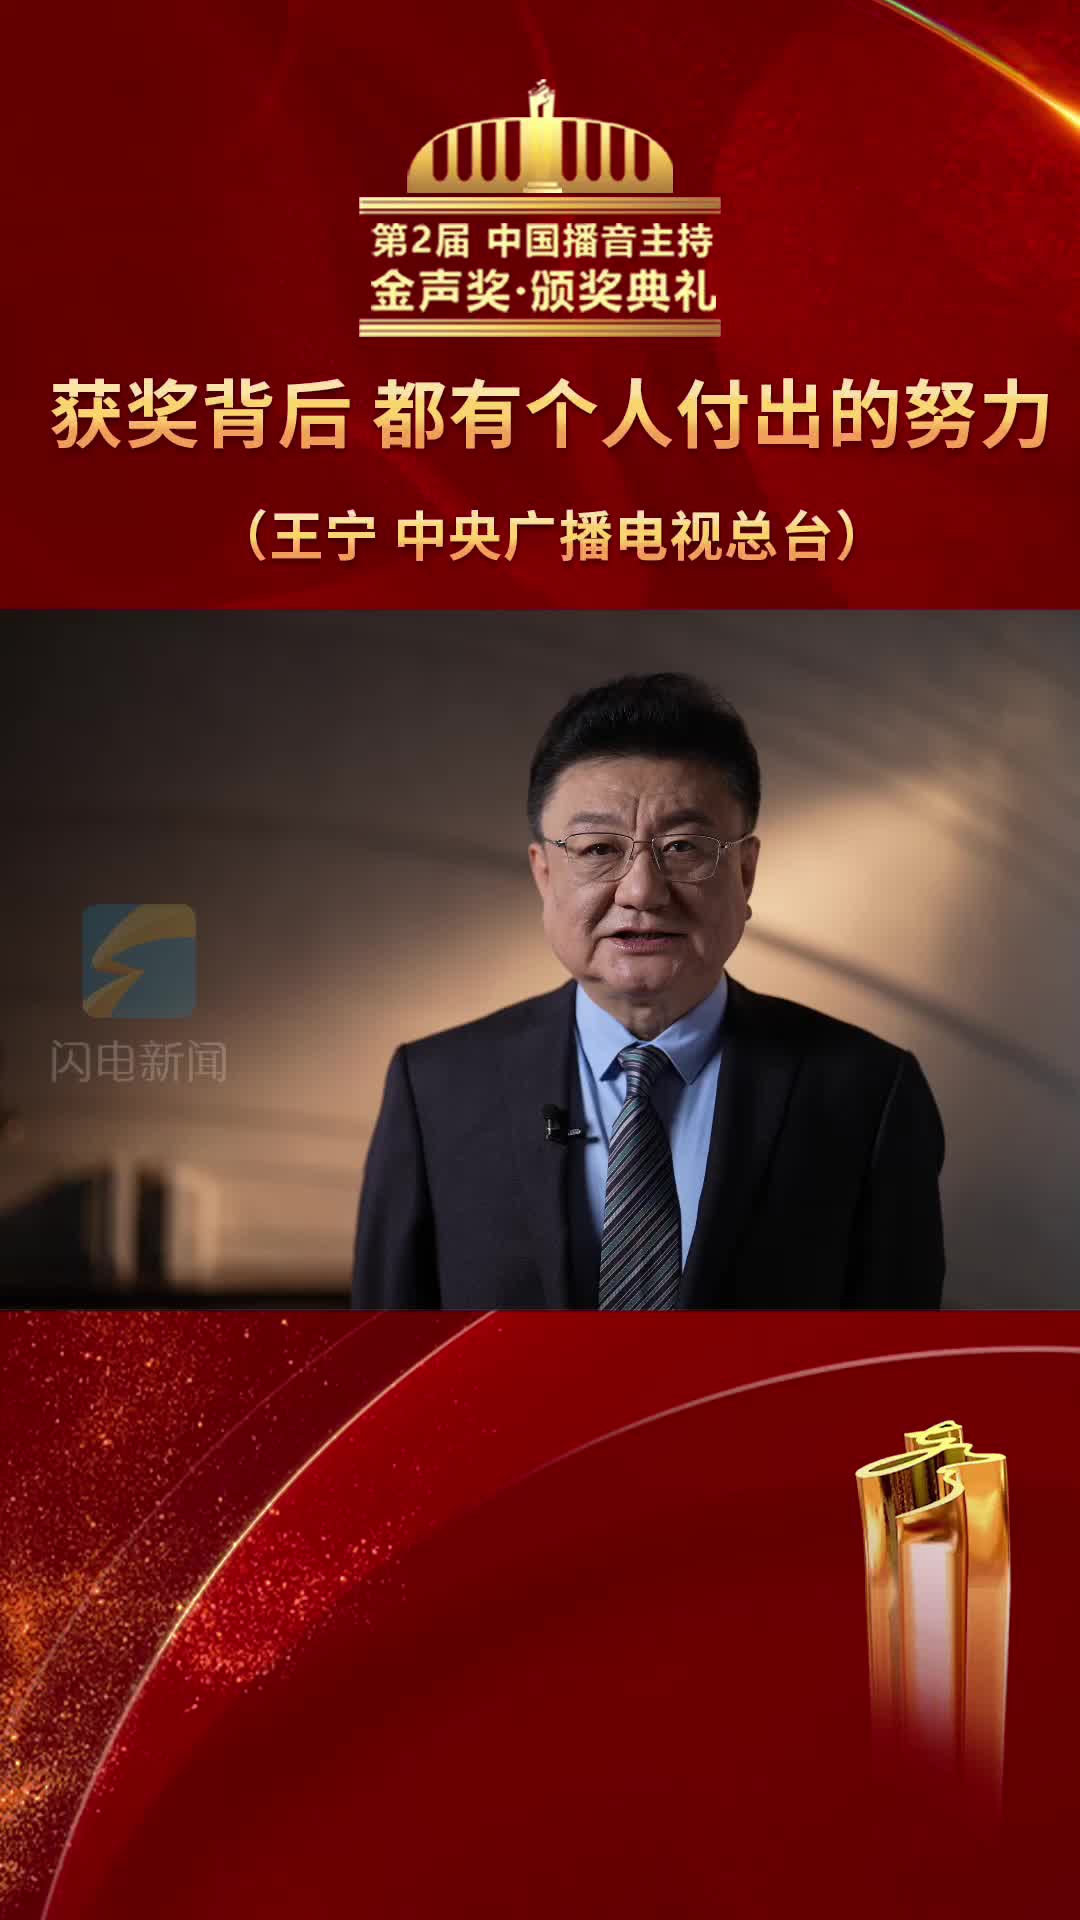 第2届中国播音主持“金声奖”颁奖典礼开奖嘉宾王宁向获奖者致敬